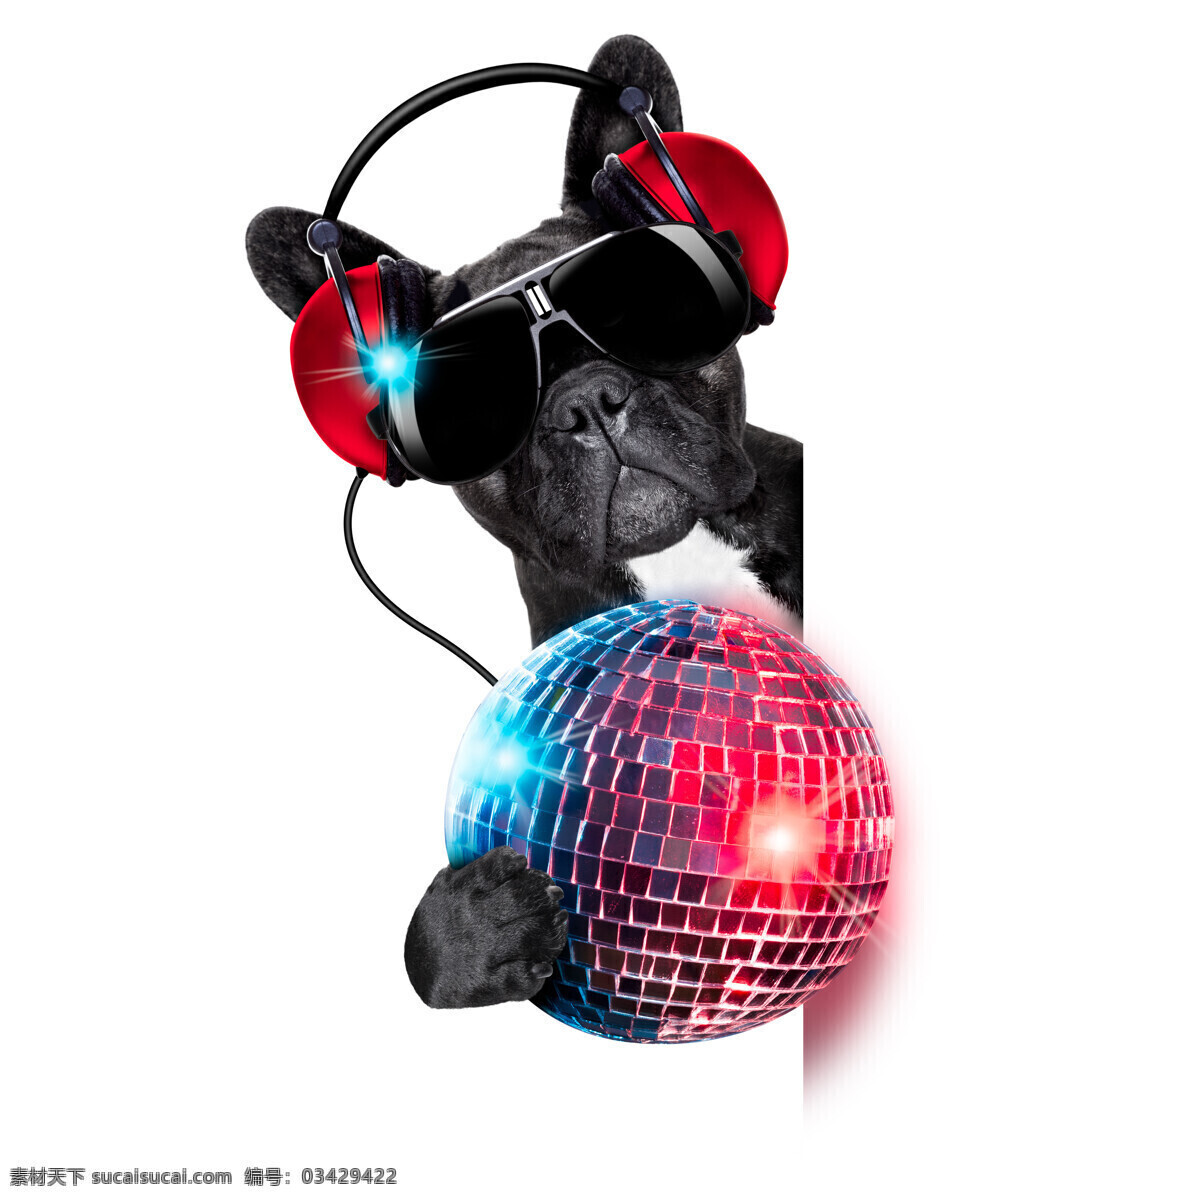 迪斯科 球 狗 耳机 墨镜 迪斯科球 宠物 动物 狗狗图片 生物世界